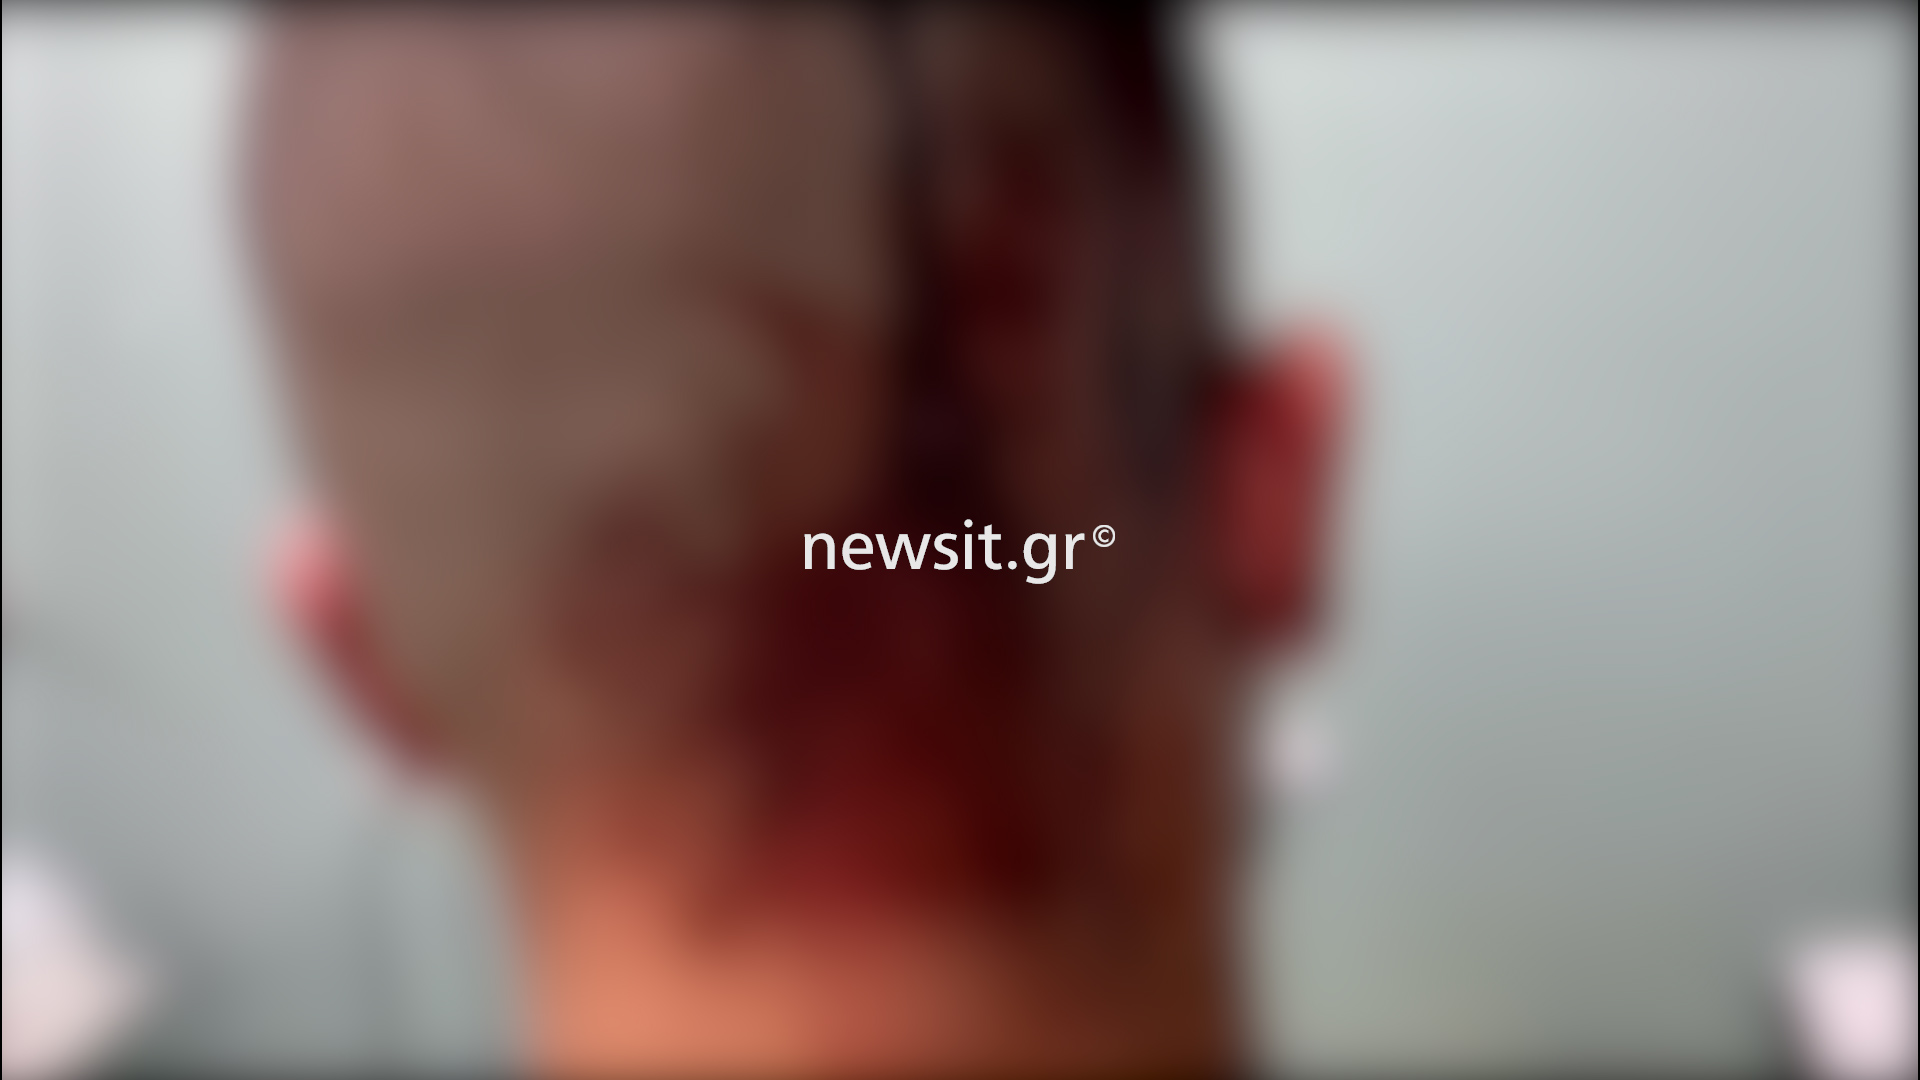 Νέα Φιλαδέλφεια: Άγρια επίθεση με μαχαίρια και σιδερολοστούς σε δύο αδέρφια – Τι λέει ο πατέρας των θυμάτων στο newsit.gr